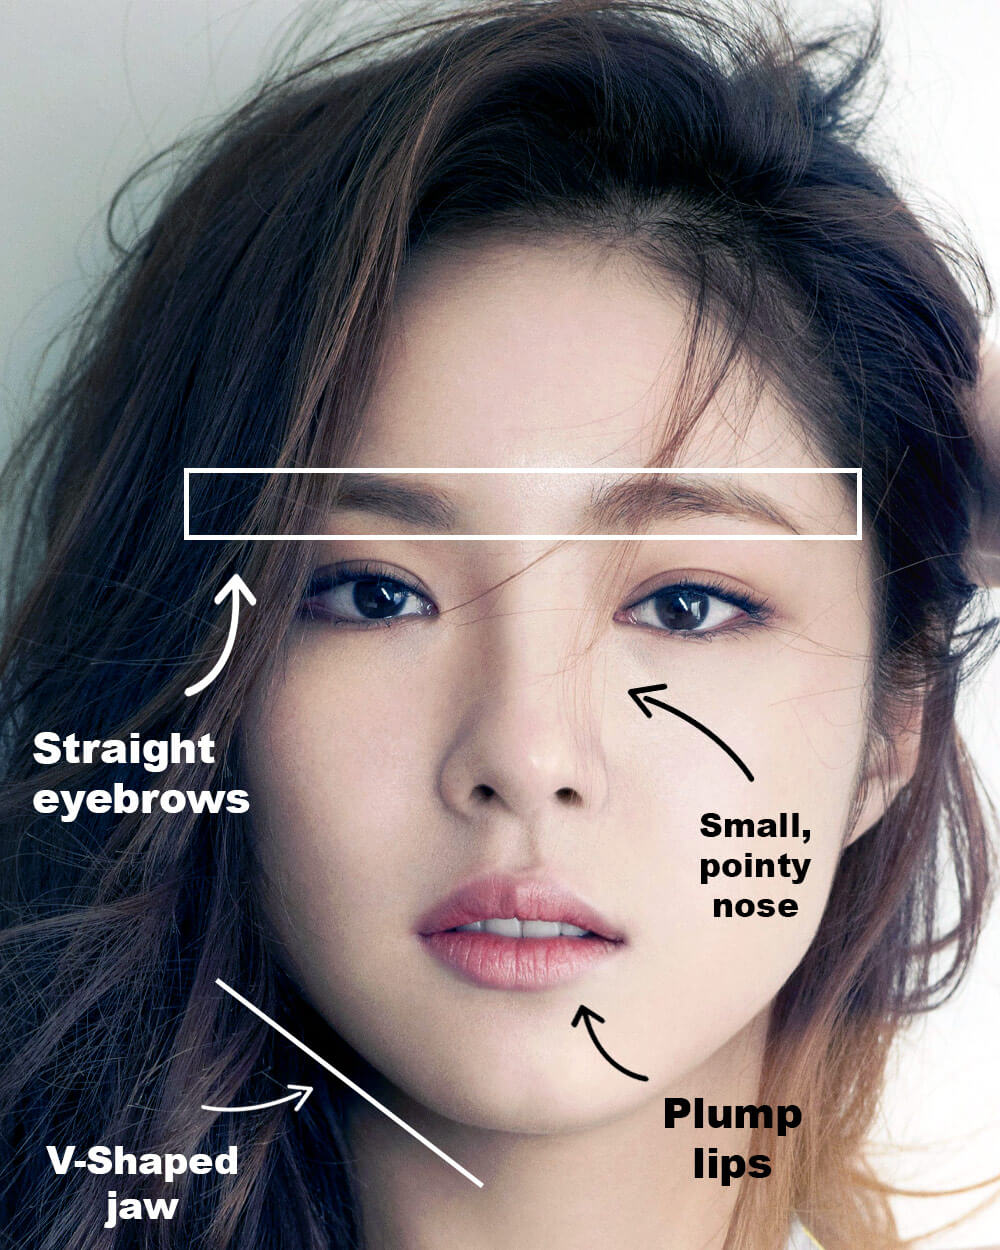 Khám phá chuẩn mực sắc đẹp Hàn Quốc - Báo Người lao động